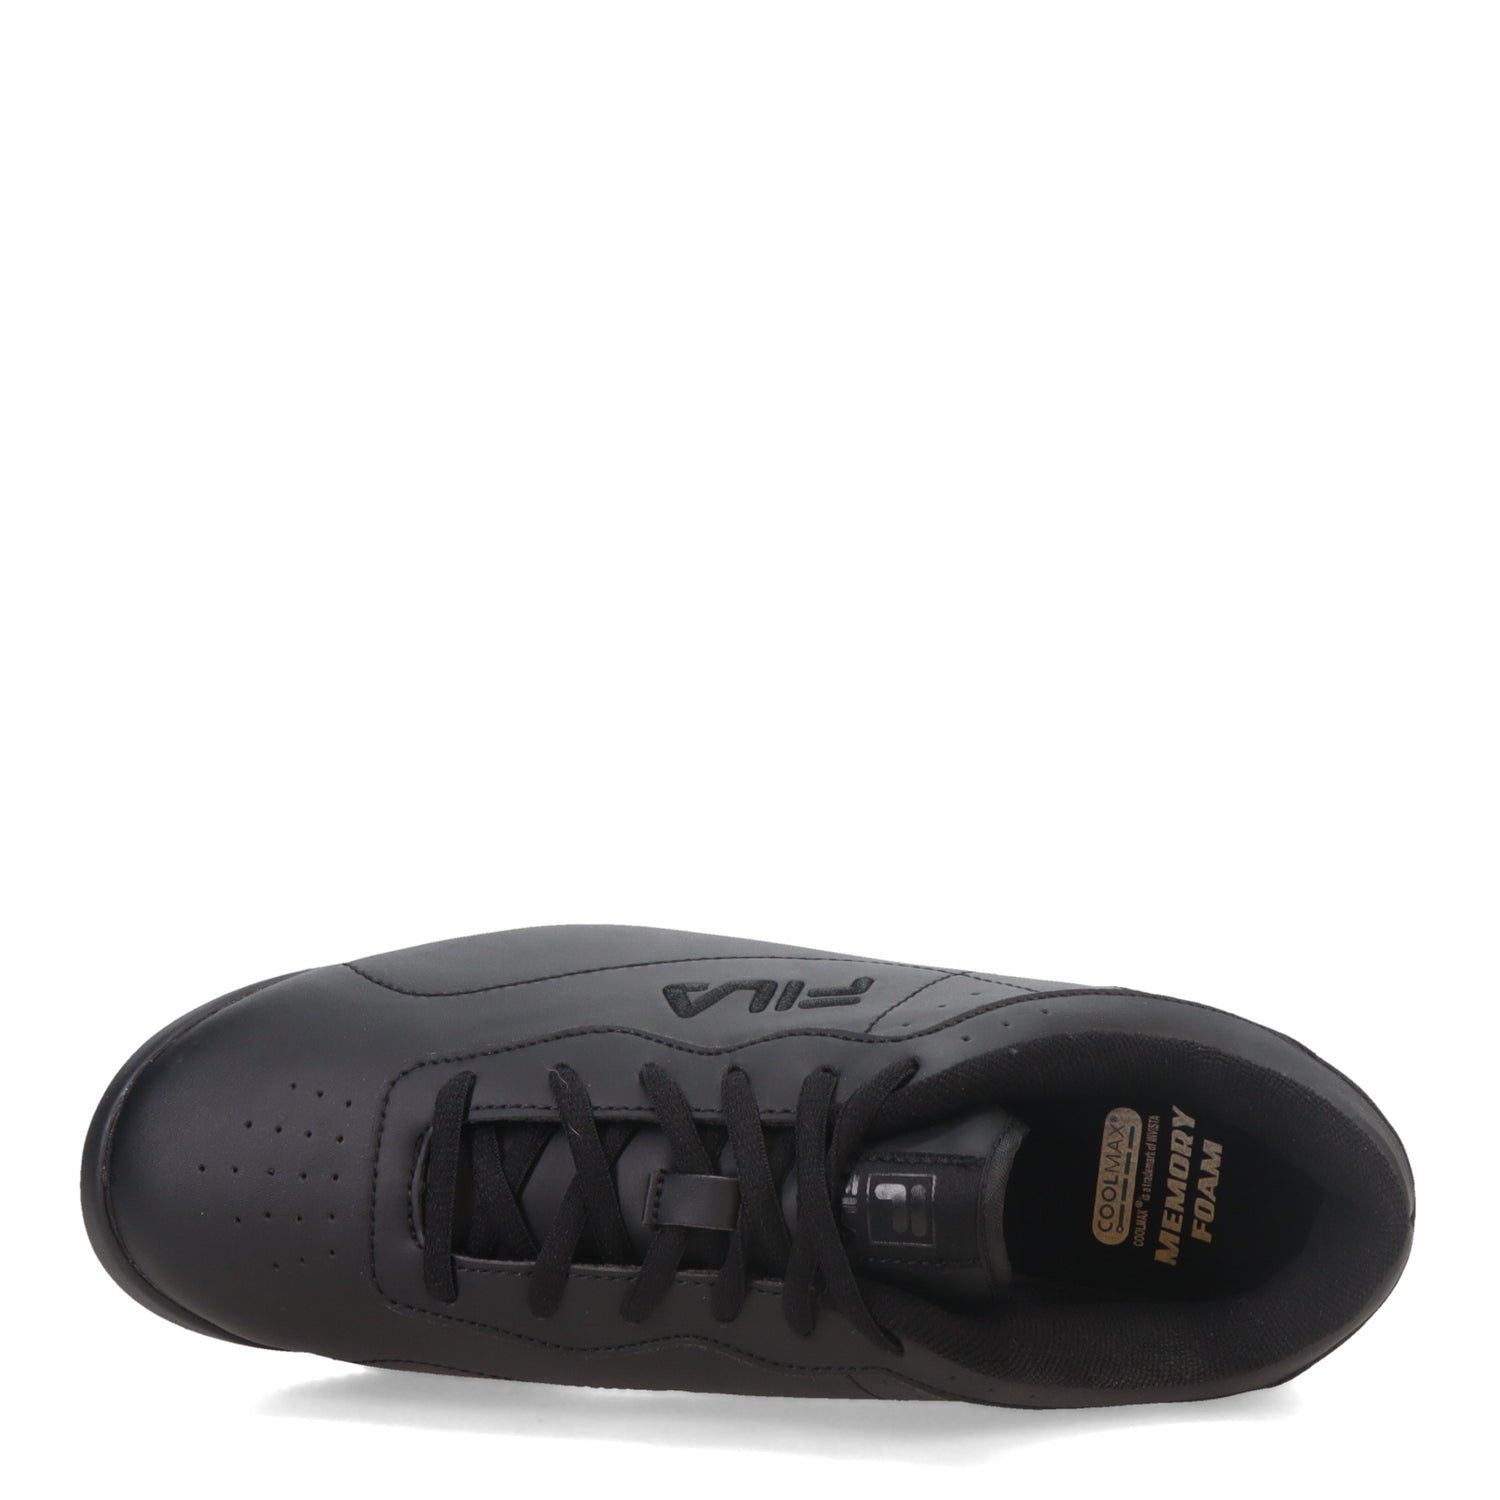 Peltz Shoes  Women's Fila Memory Viable SR Work Sneaker - Wide Width Black 5SLW5000-001